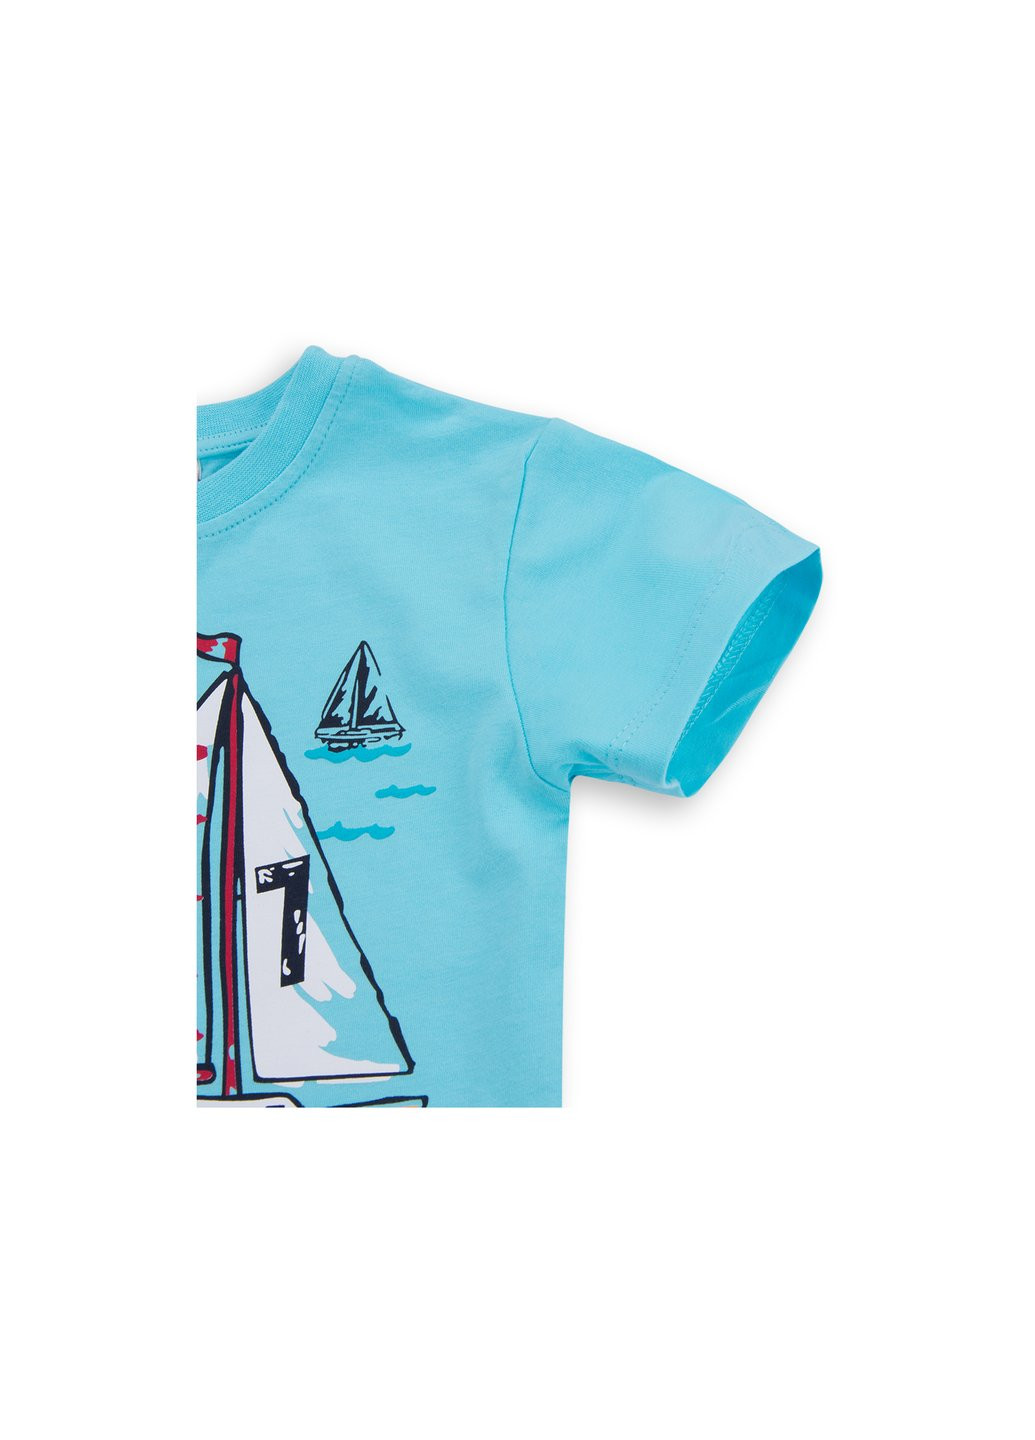 Голубой летний набор детской одежды с корабликами "i'm the captain" (8306-104b-blue) E&H